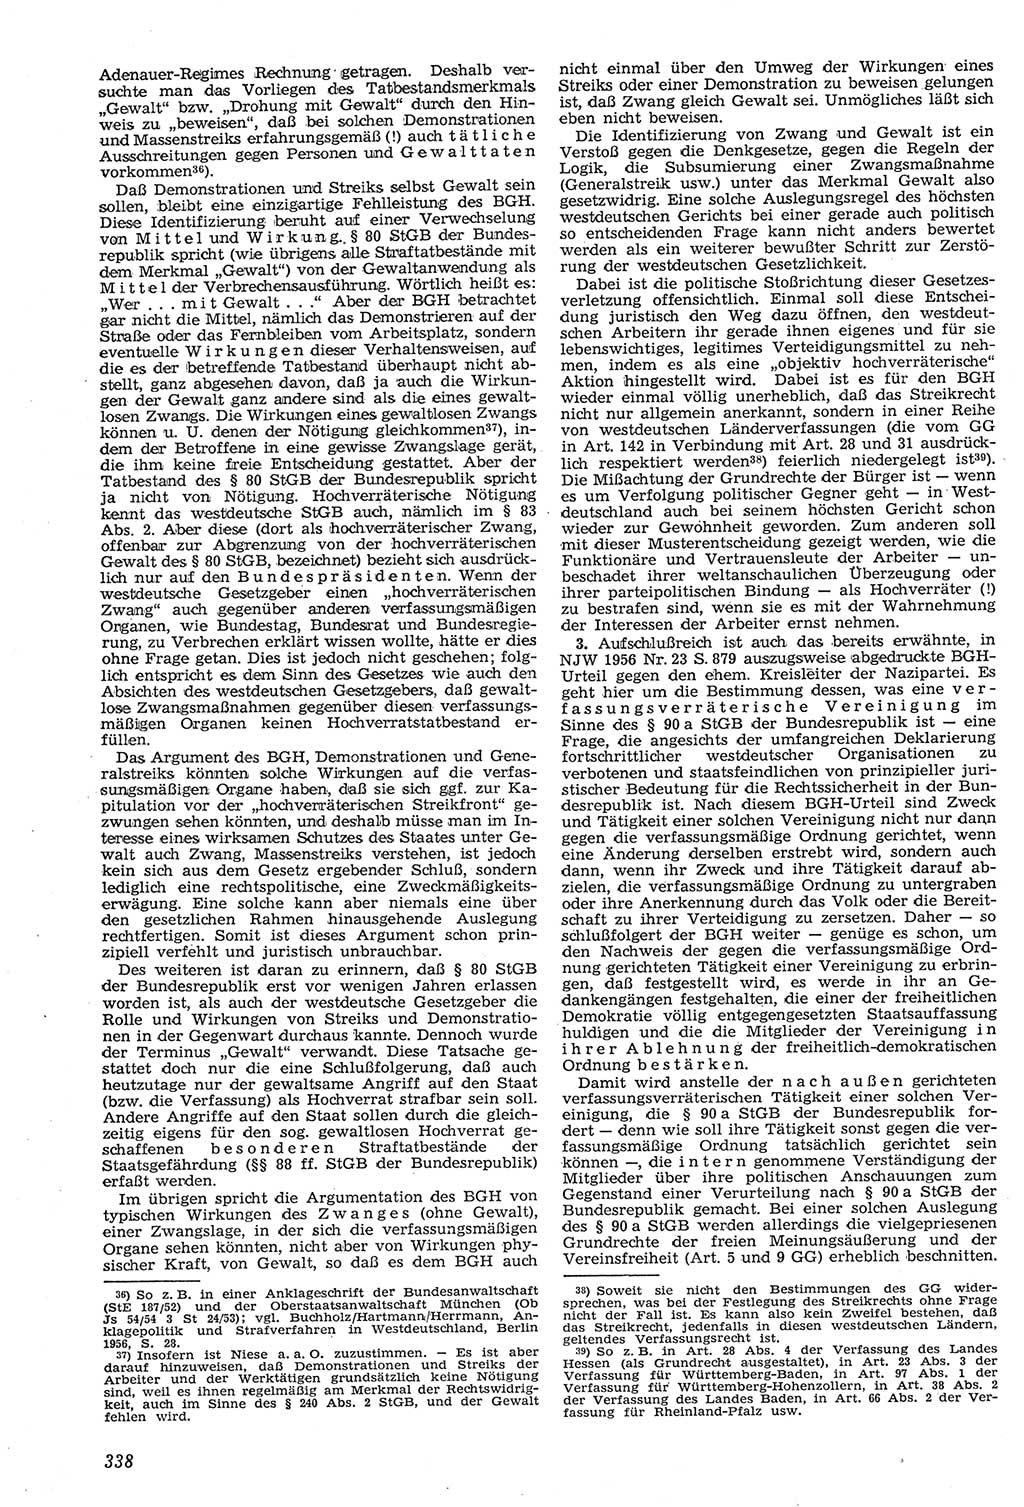 Neue Justiz (NJ), Zeitschrift für Recht und Rechtswissenschaft [Deutsche Demokratische Republik (DDR)], 11. Jahrgang 1957, Seite 338 (NJ DDR 1957, S. 338)